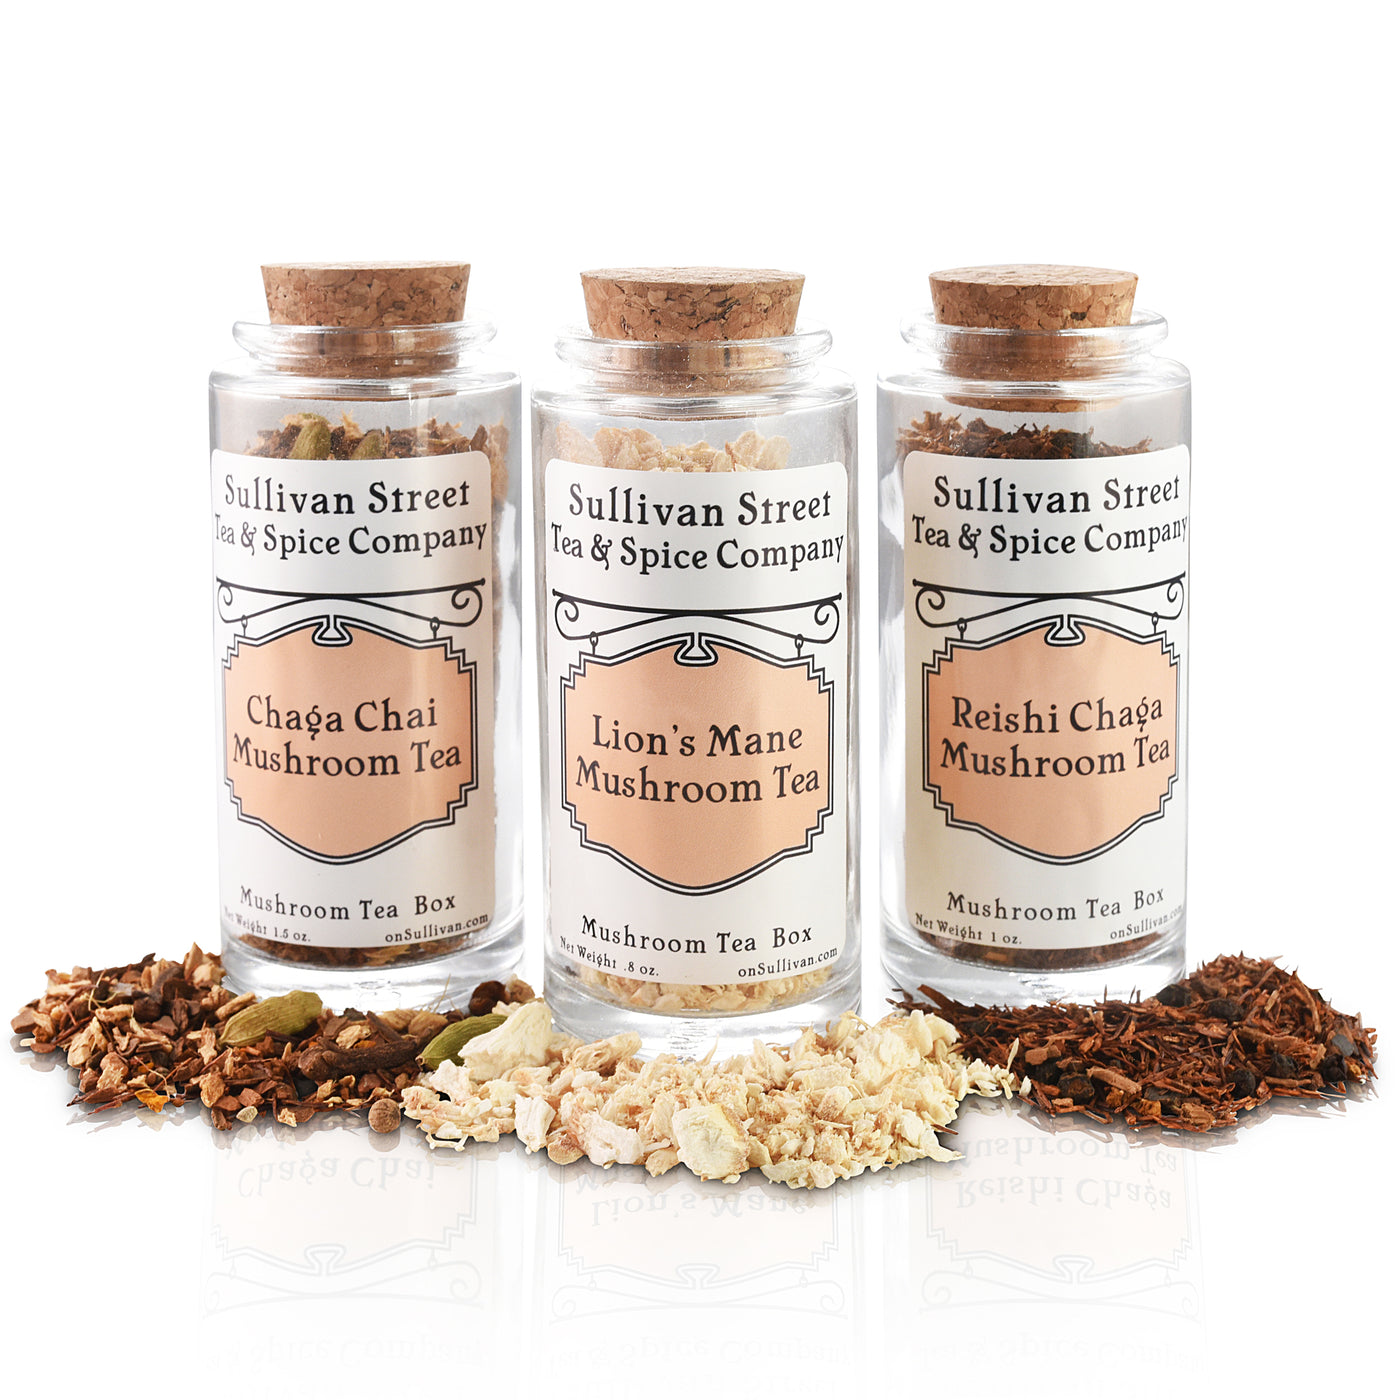 Mushroom Tea Gift Box - Sullivan Street Tea & Spice Company